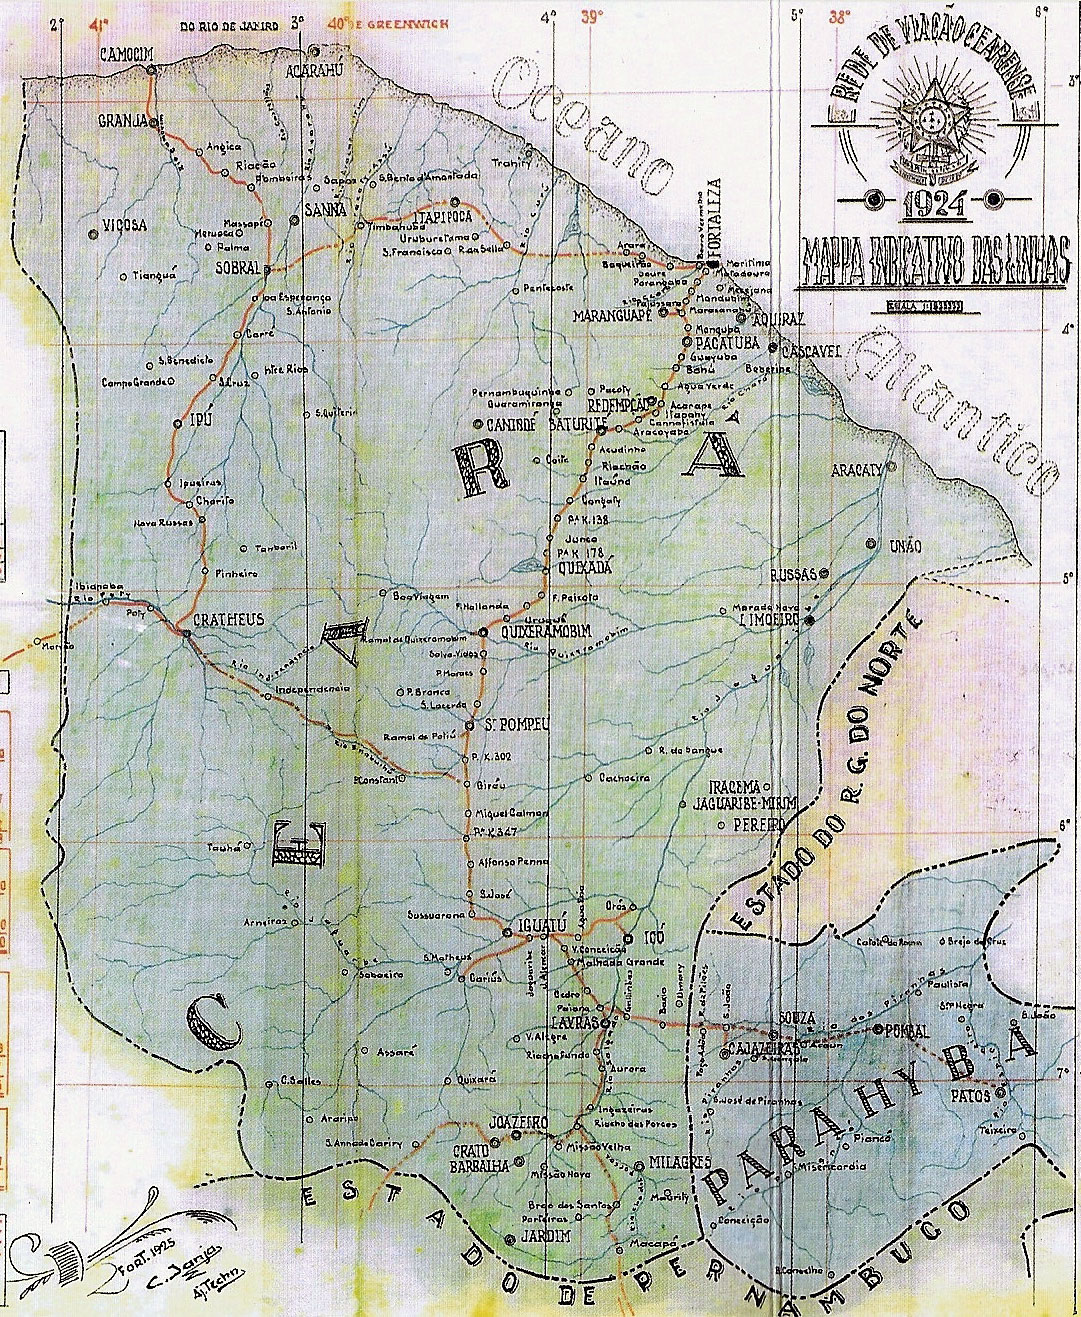 Mapa dos trilhos da Rede de Viação Cearense em 1924